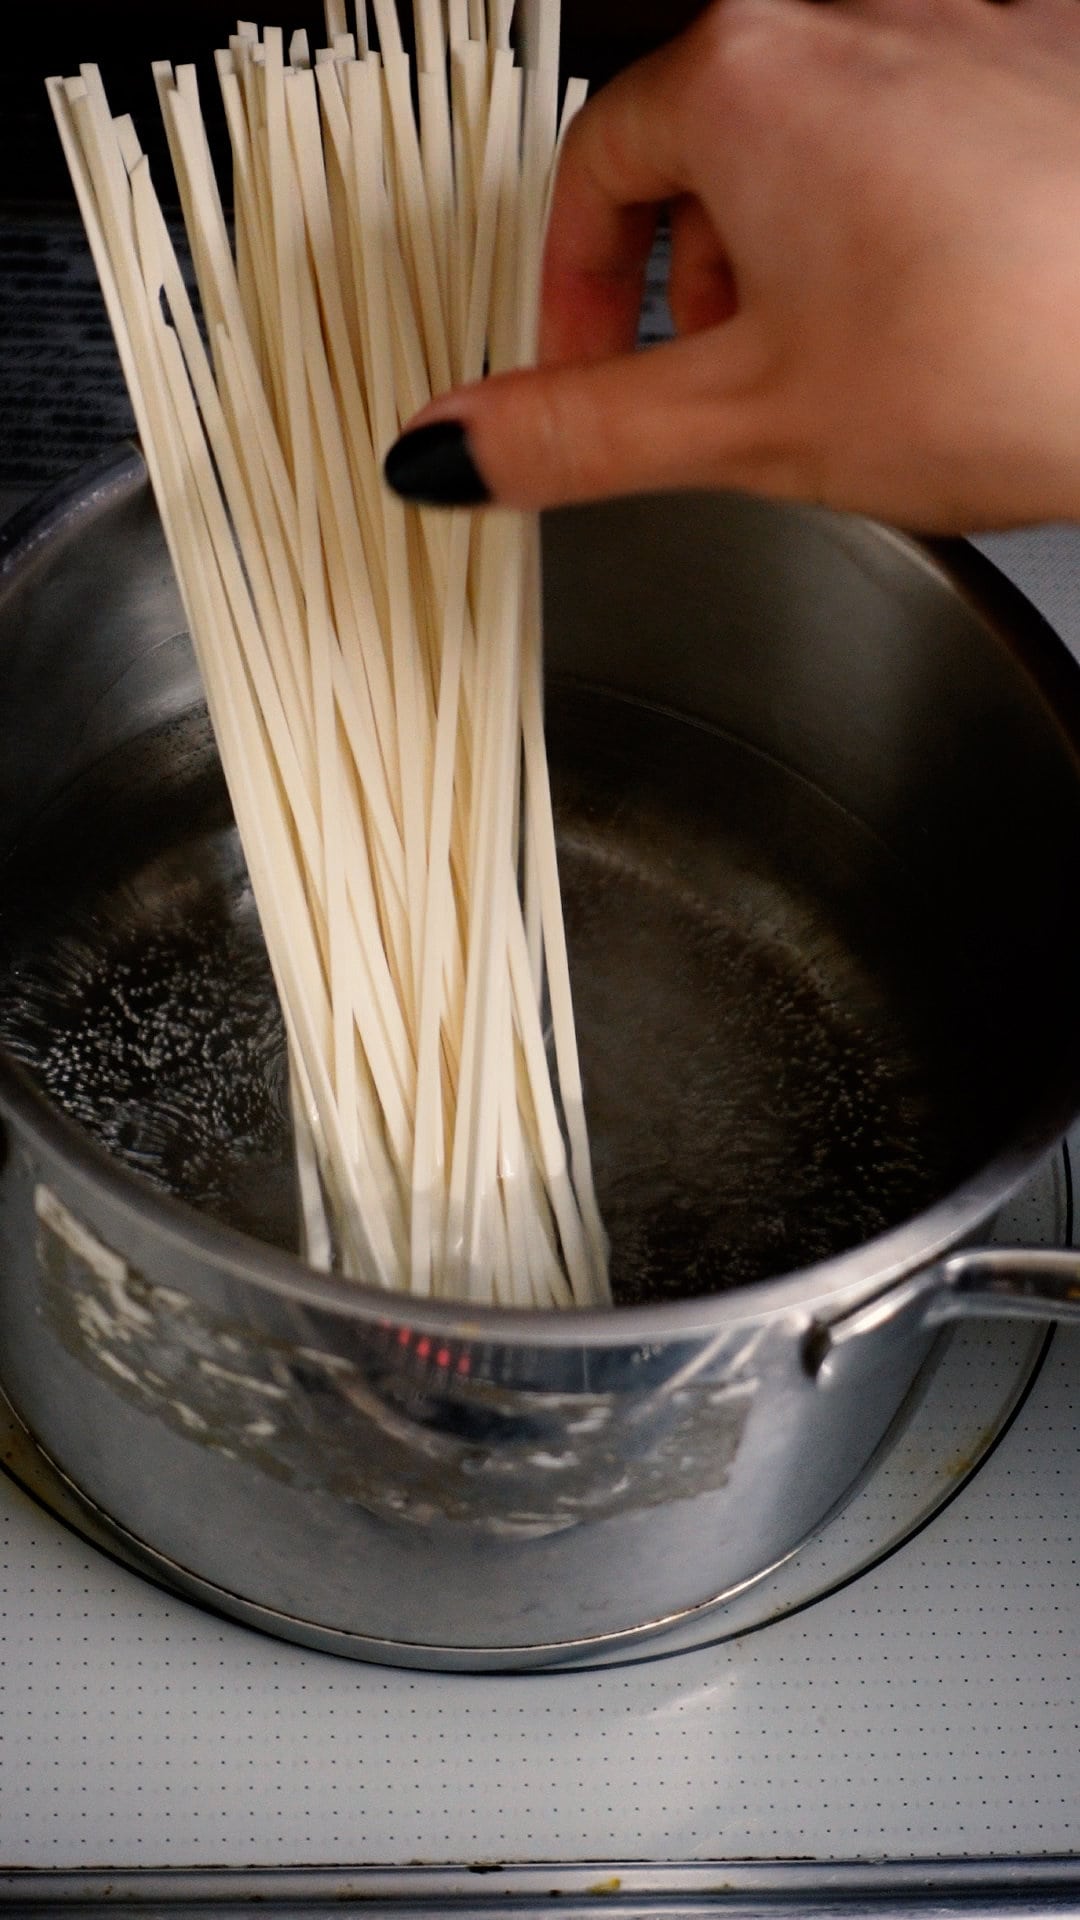 Cook noodles